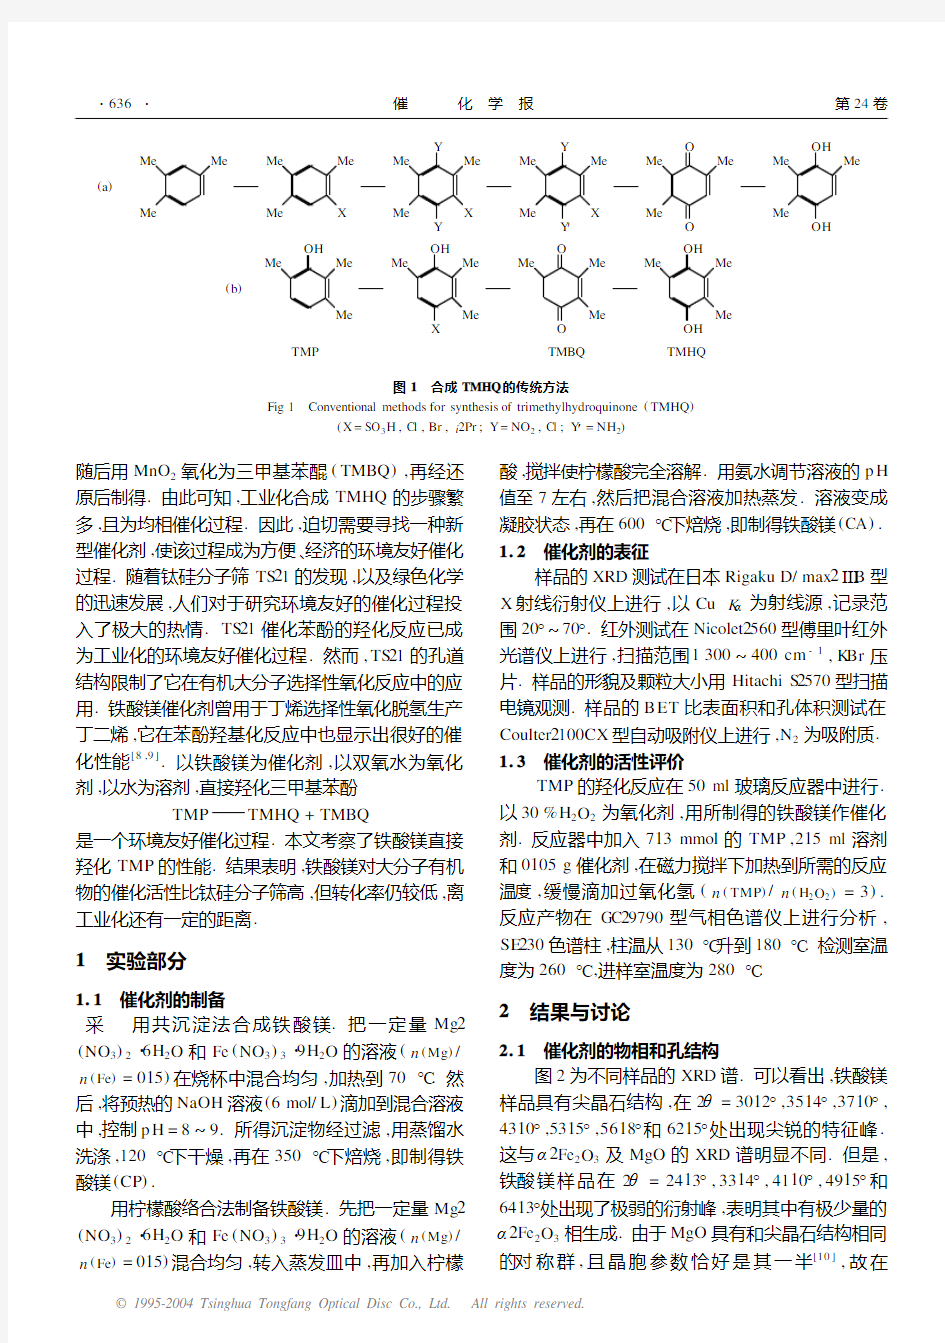 铁酸镁在2,3,6-三甲基苯酚羟基化反应中的催化性能